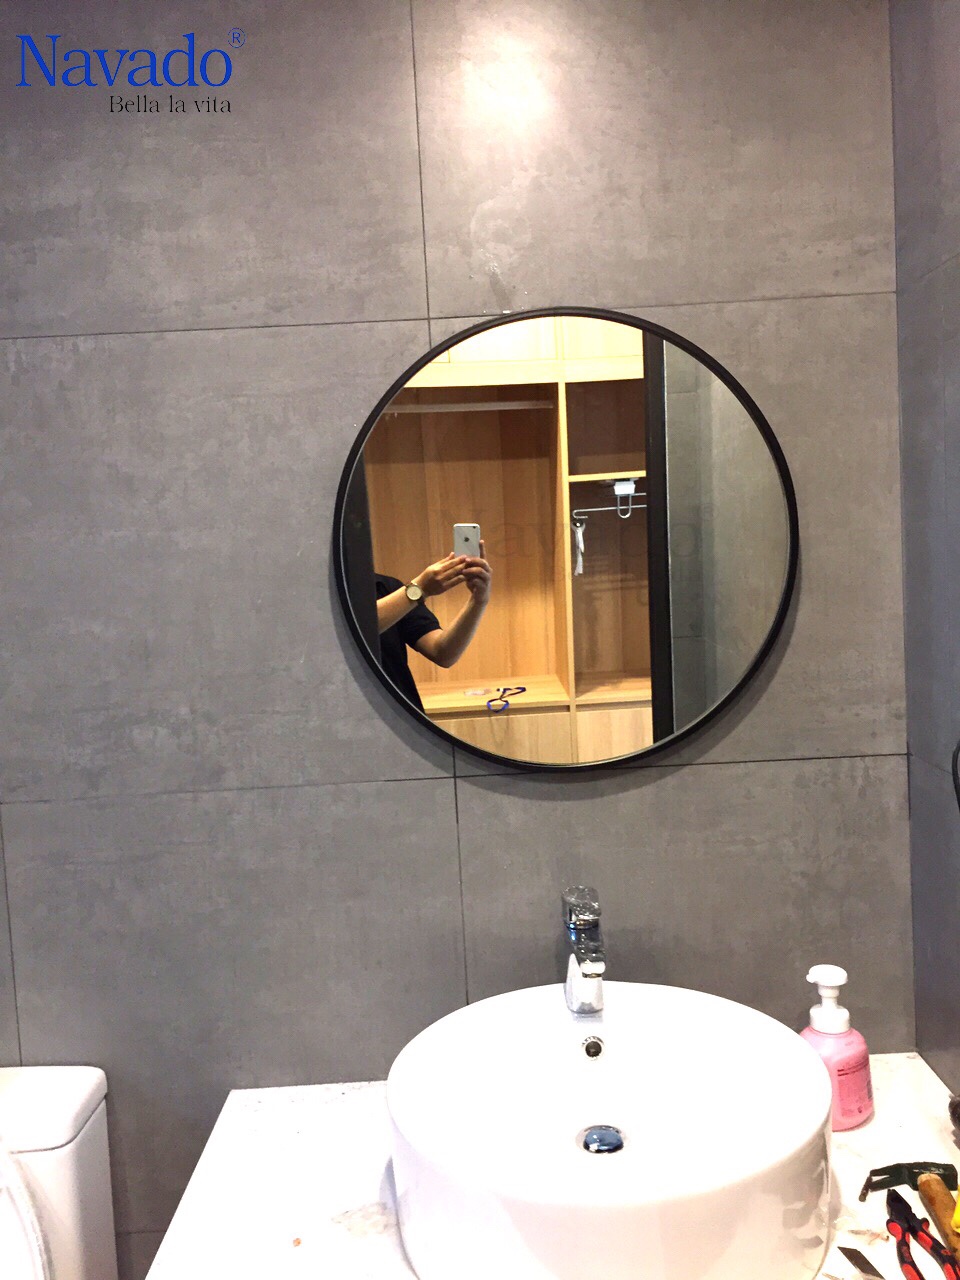 Với gương treo nhà tắm hiện đại, bạn sẽ đem đến một không gian tắm thật sang trọng và đẳng cấp. Hình ảnh sẽ chỉ cho bạn những tinh hoa của thiết kế và sự đa dạng của từng loại gương. Hãy khám phá và tìm thấy mẫu gương phù hợp cho không gian của bạn.